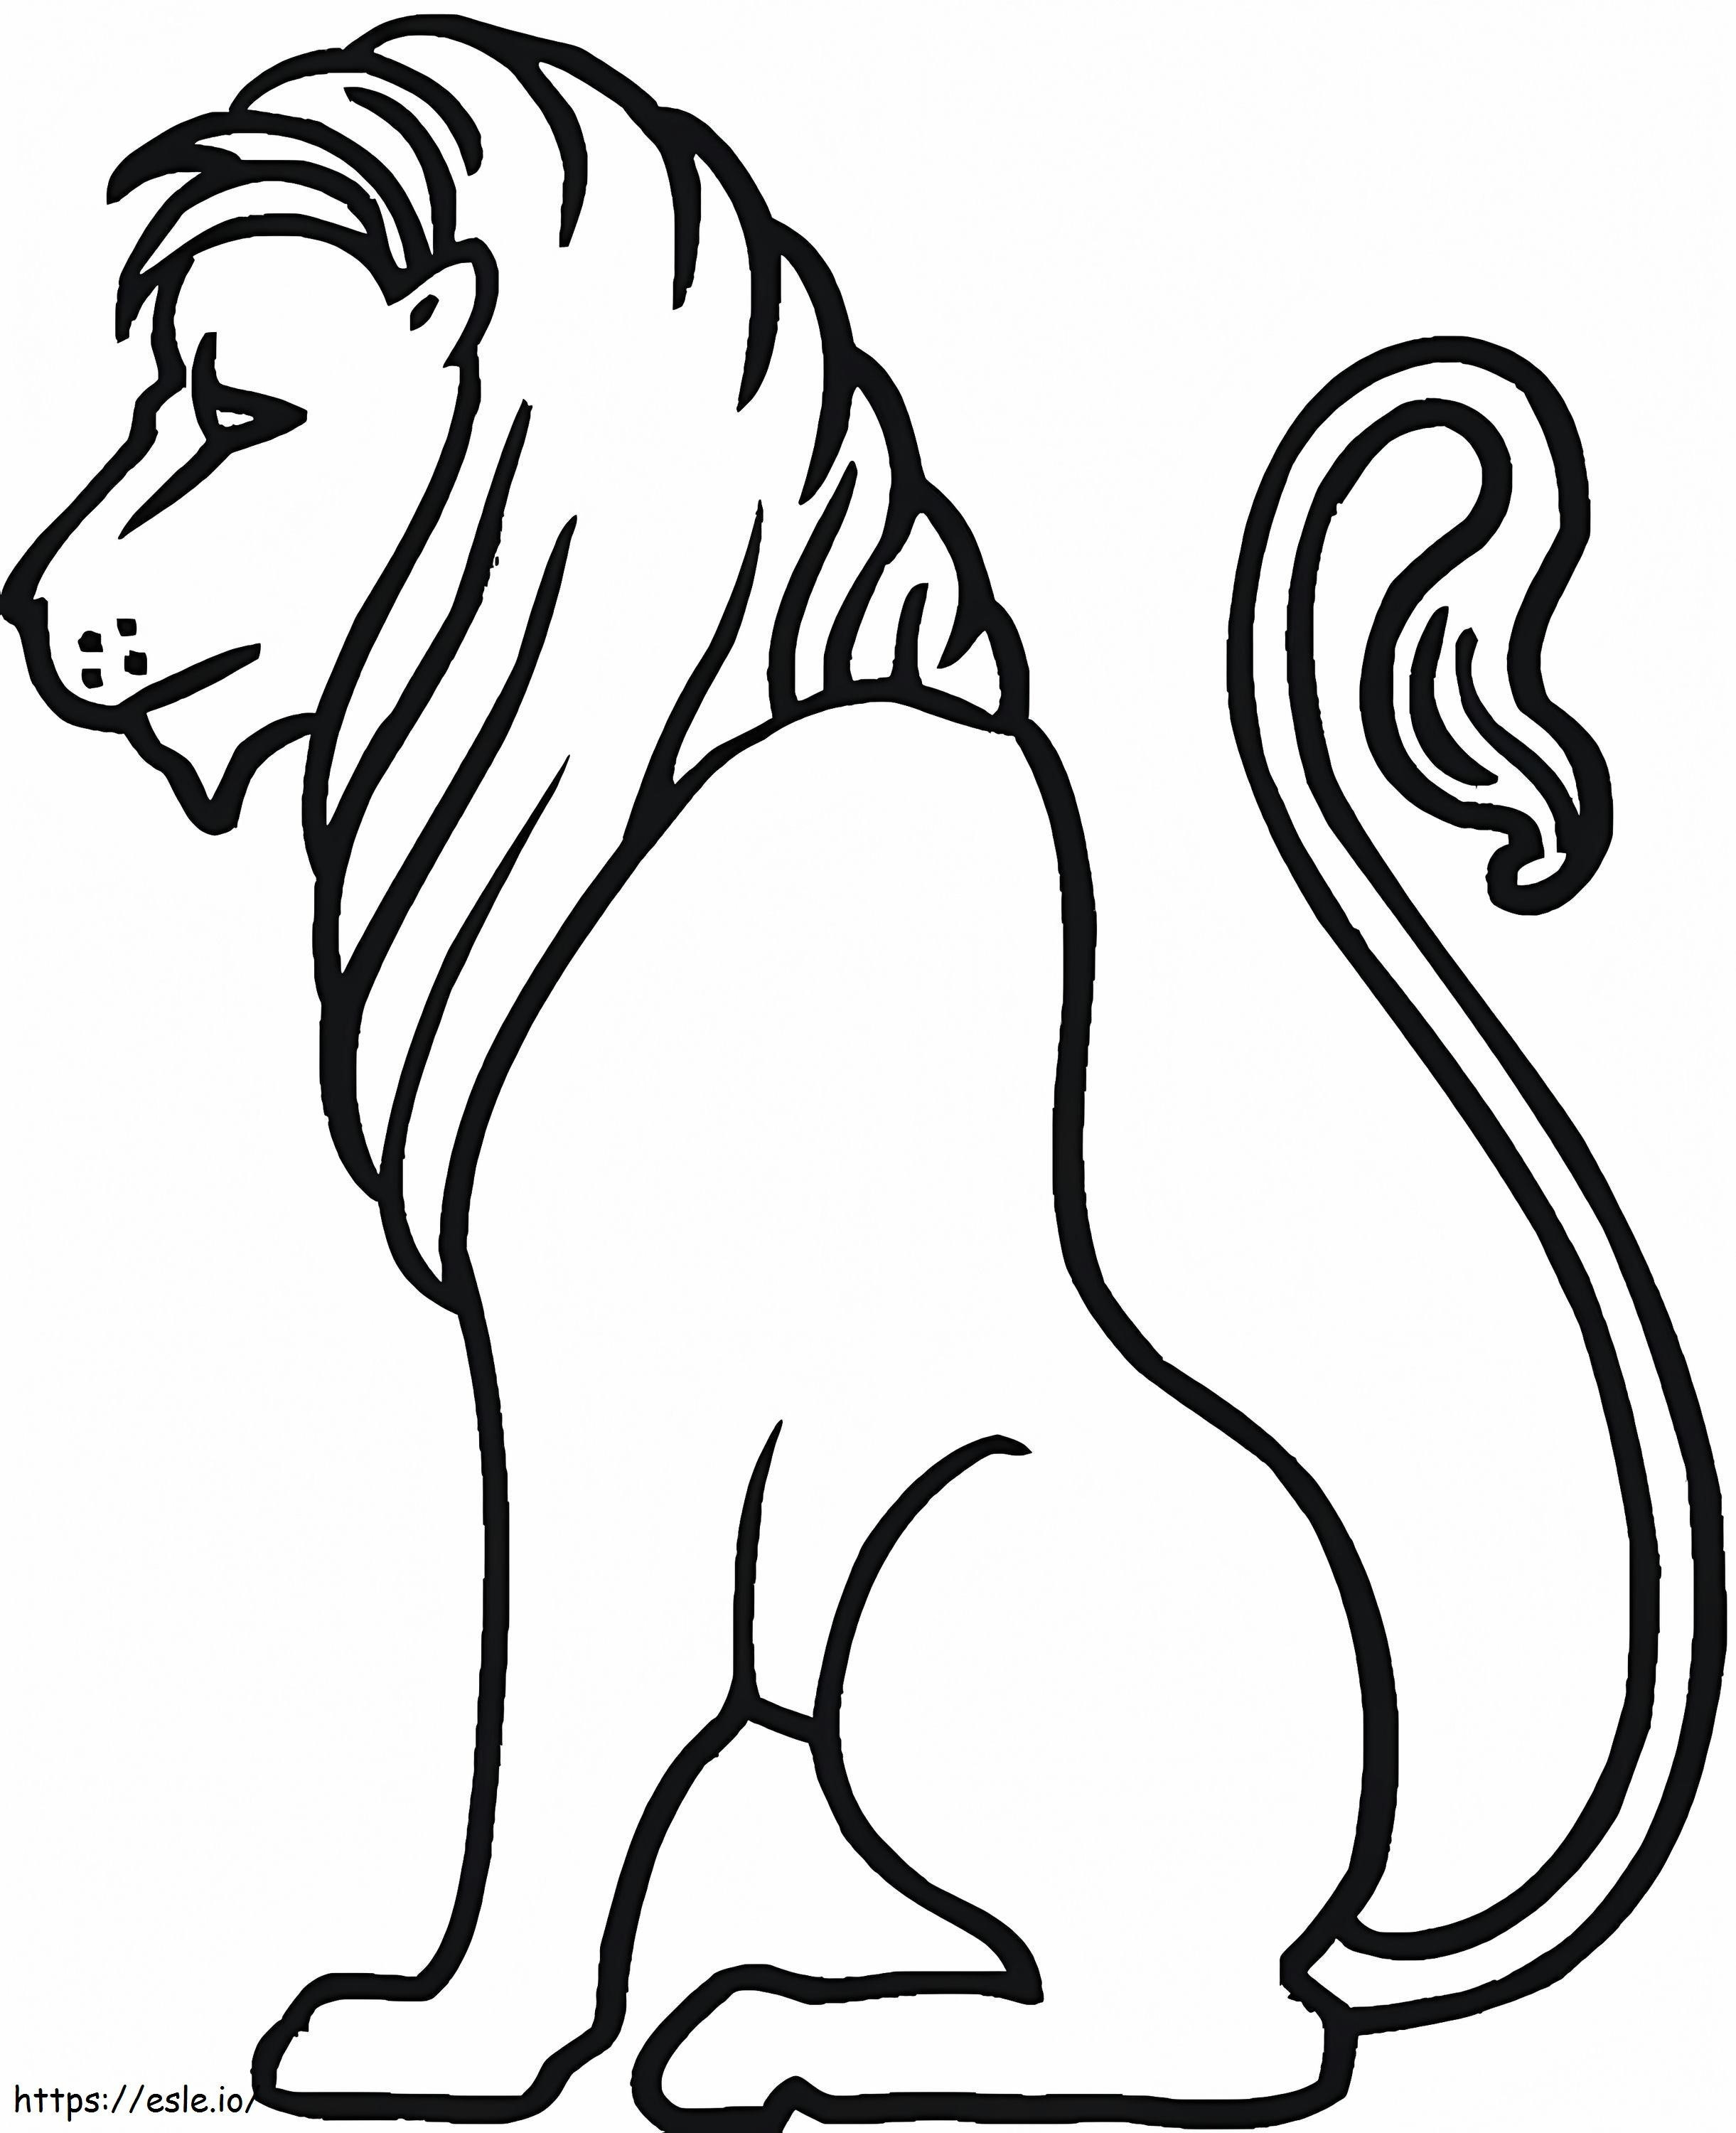 Coloriage Lion facile à imprimer dessin